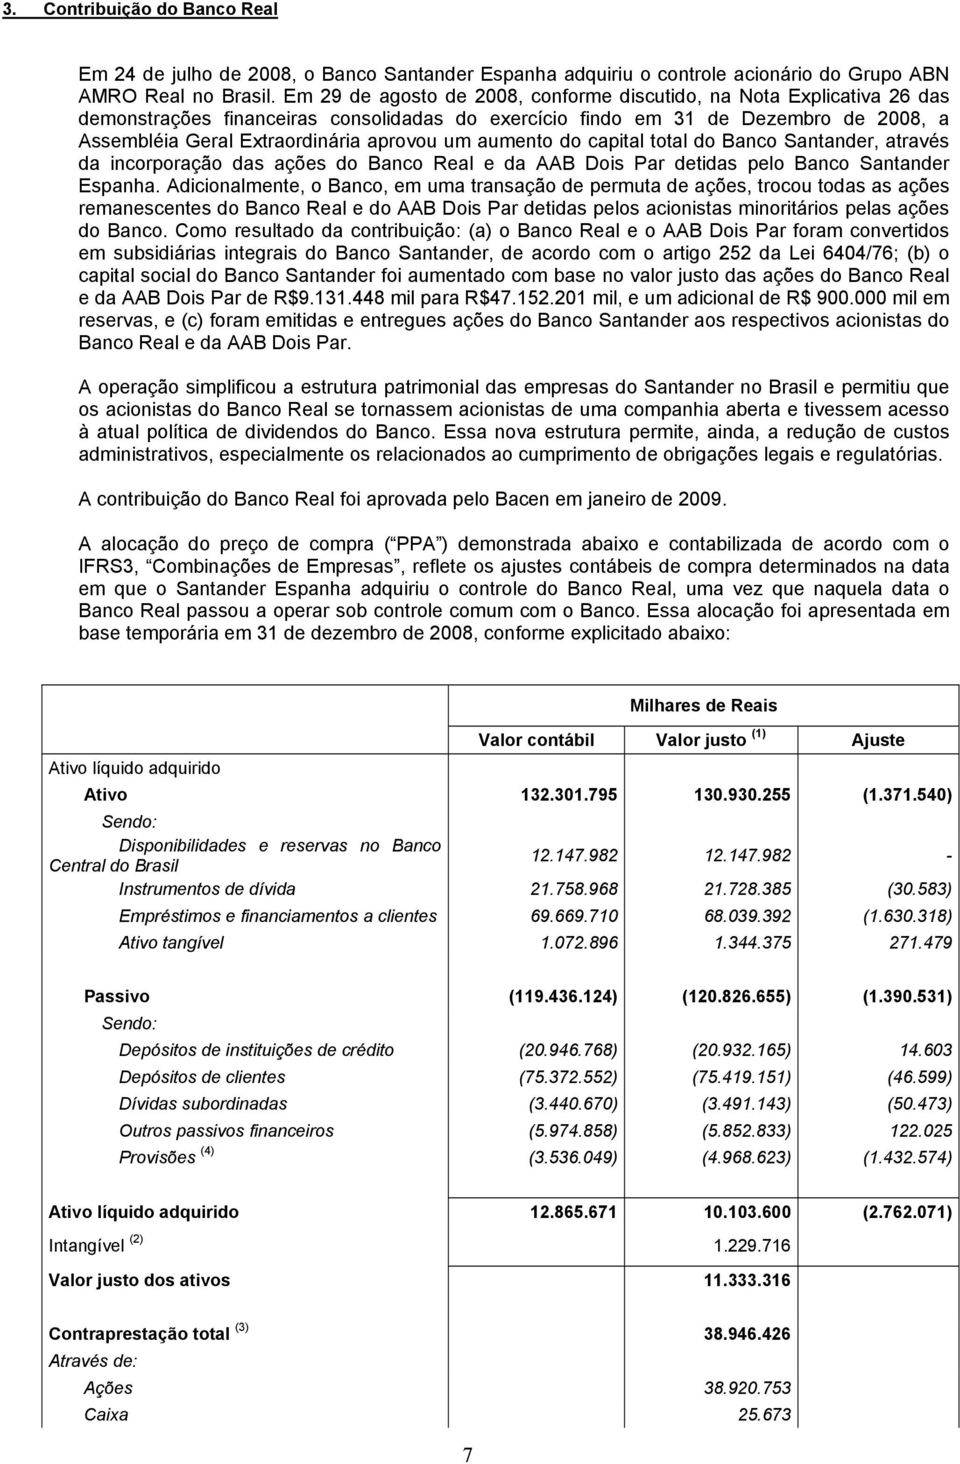 um aumento do capital total do Banco Santander, através da incorporação das ações do Banco Real e da AAB Dois Par detidas pelo Banco Santander Espanha.